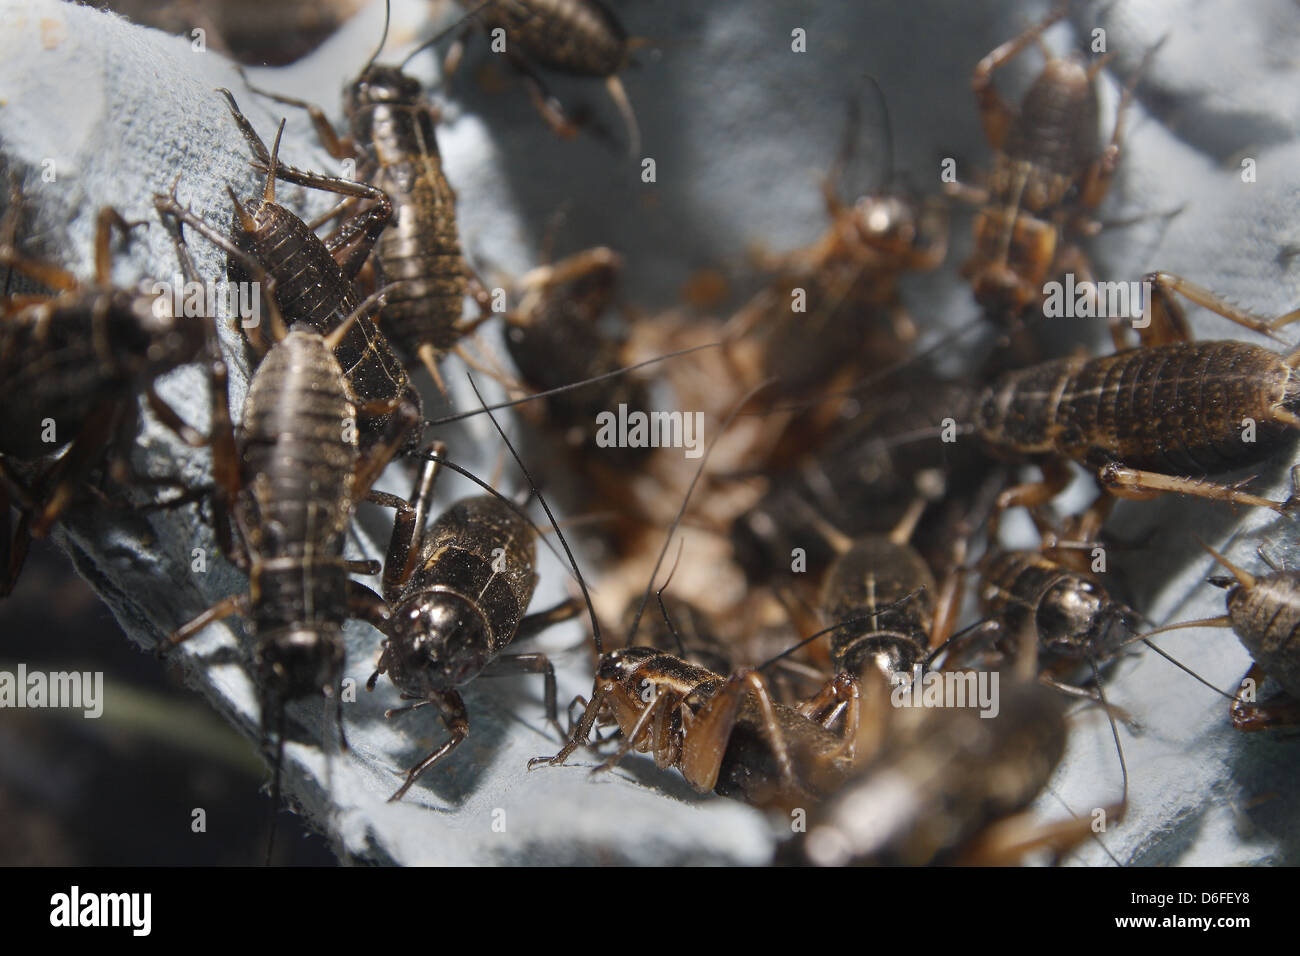 medium sized black crickets on egg boxes Gryllus assimilis Stock Photo